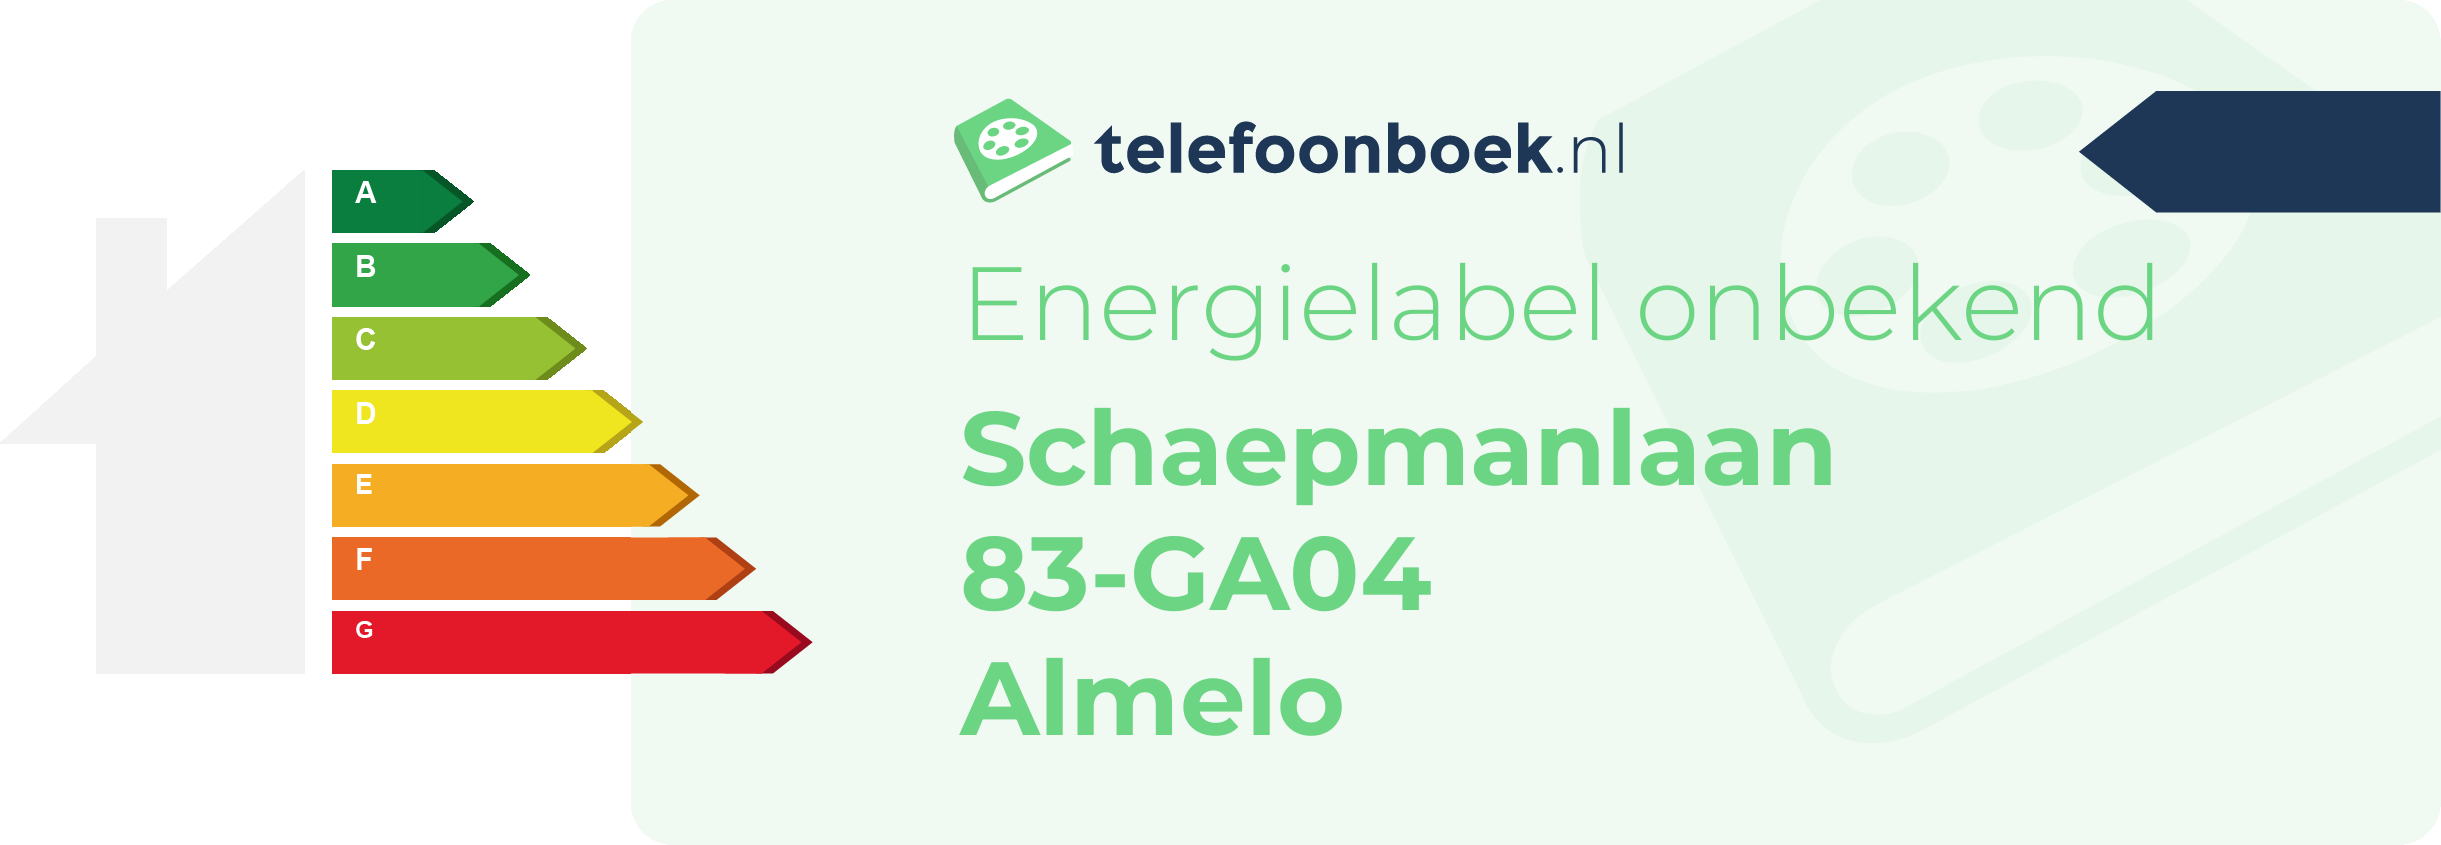 Energielabel Schaepmanlaan 83-GA04 Almelo